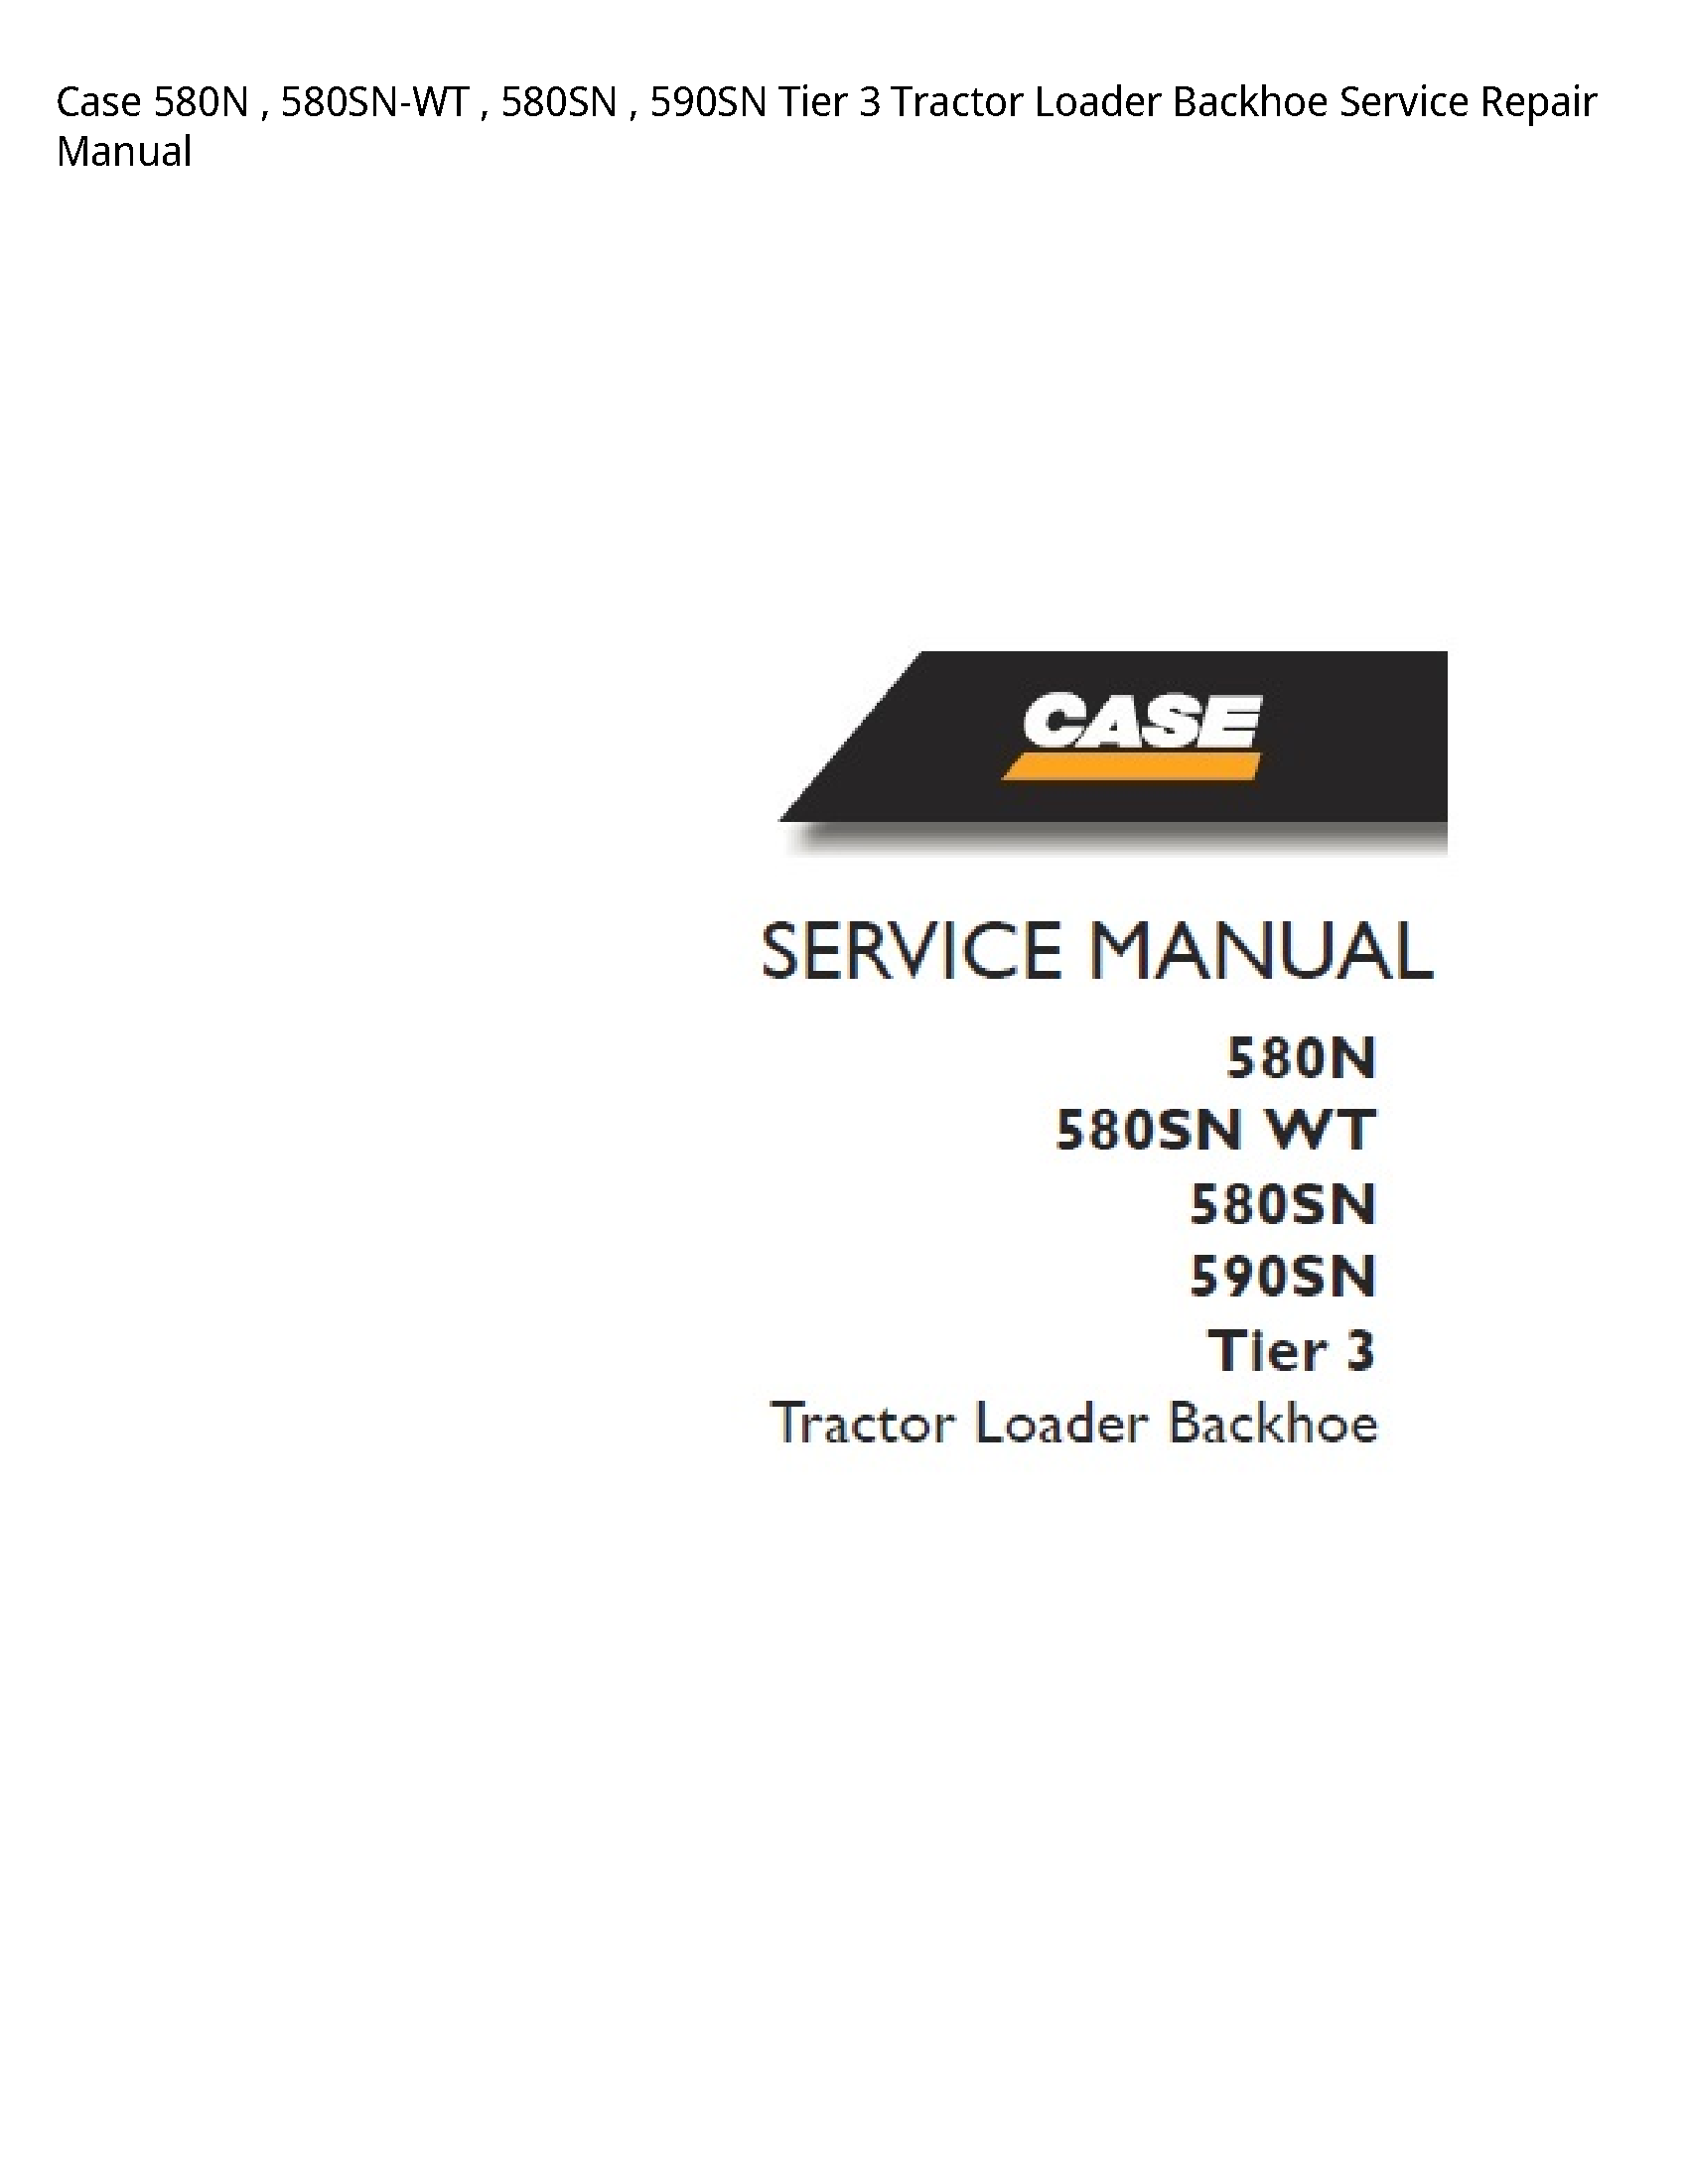 Case/Case IH 580N Tier Tractor Loader Backhoe manual